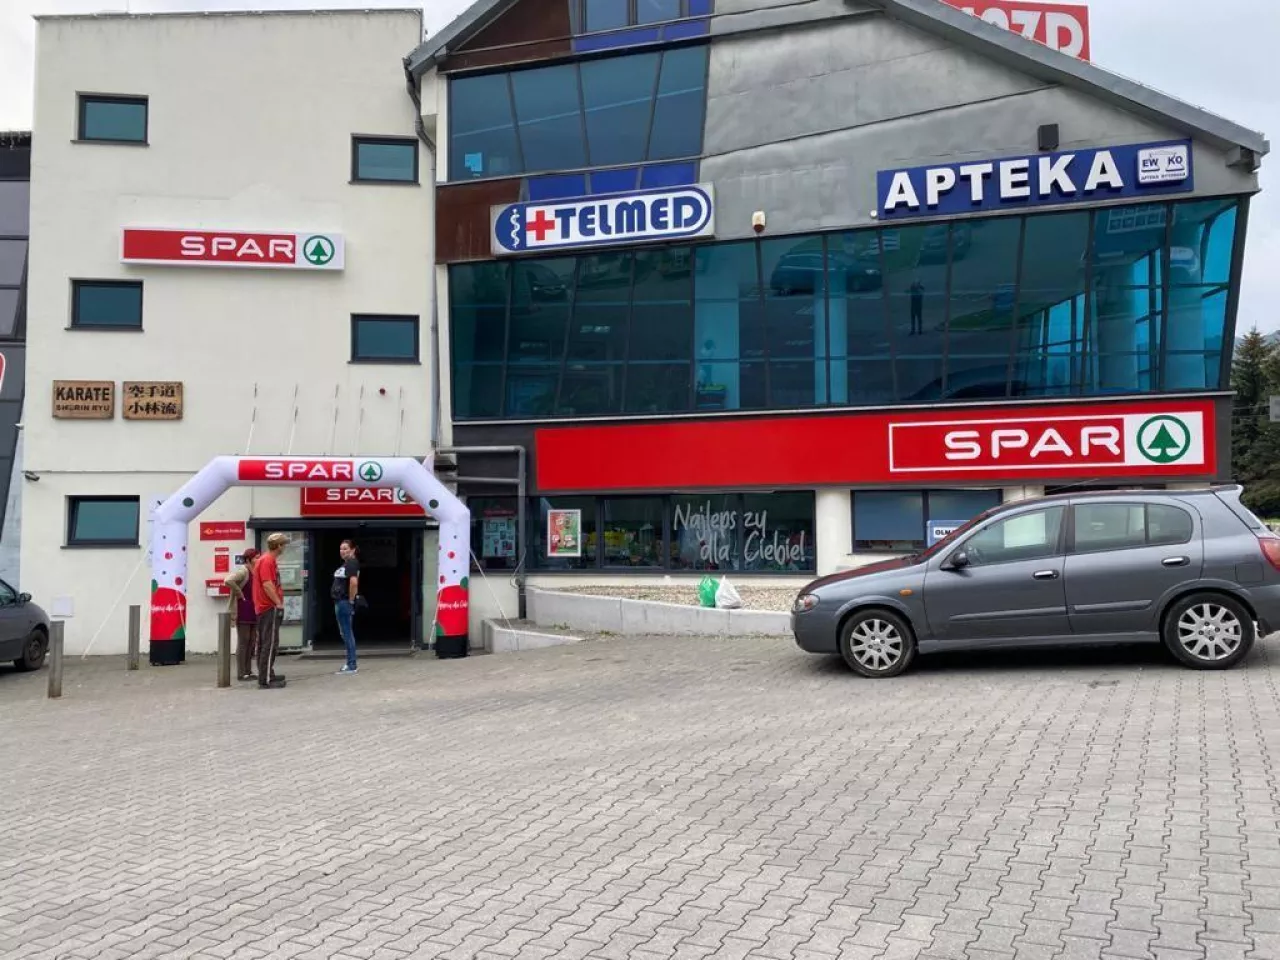 Nowy market sieci Spar w Rytrze (mat. prasowe SPAR)